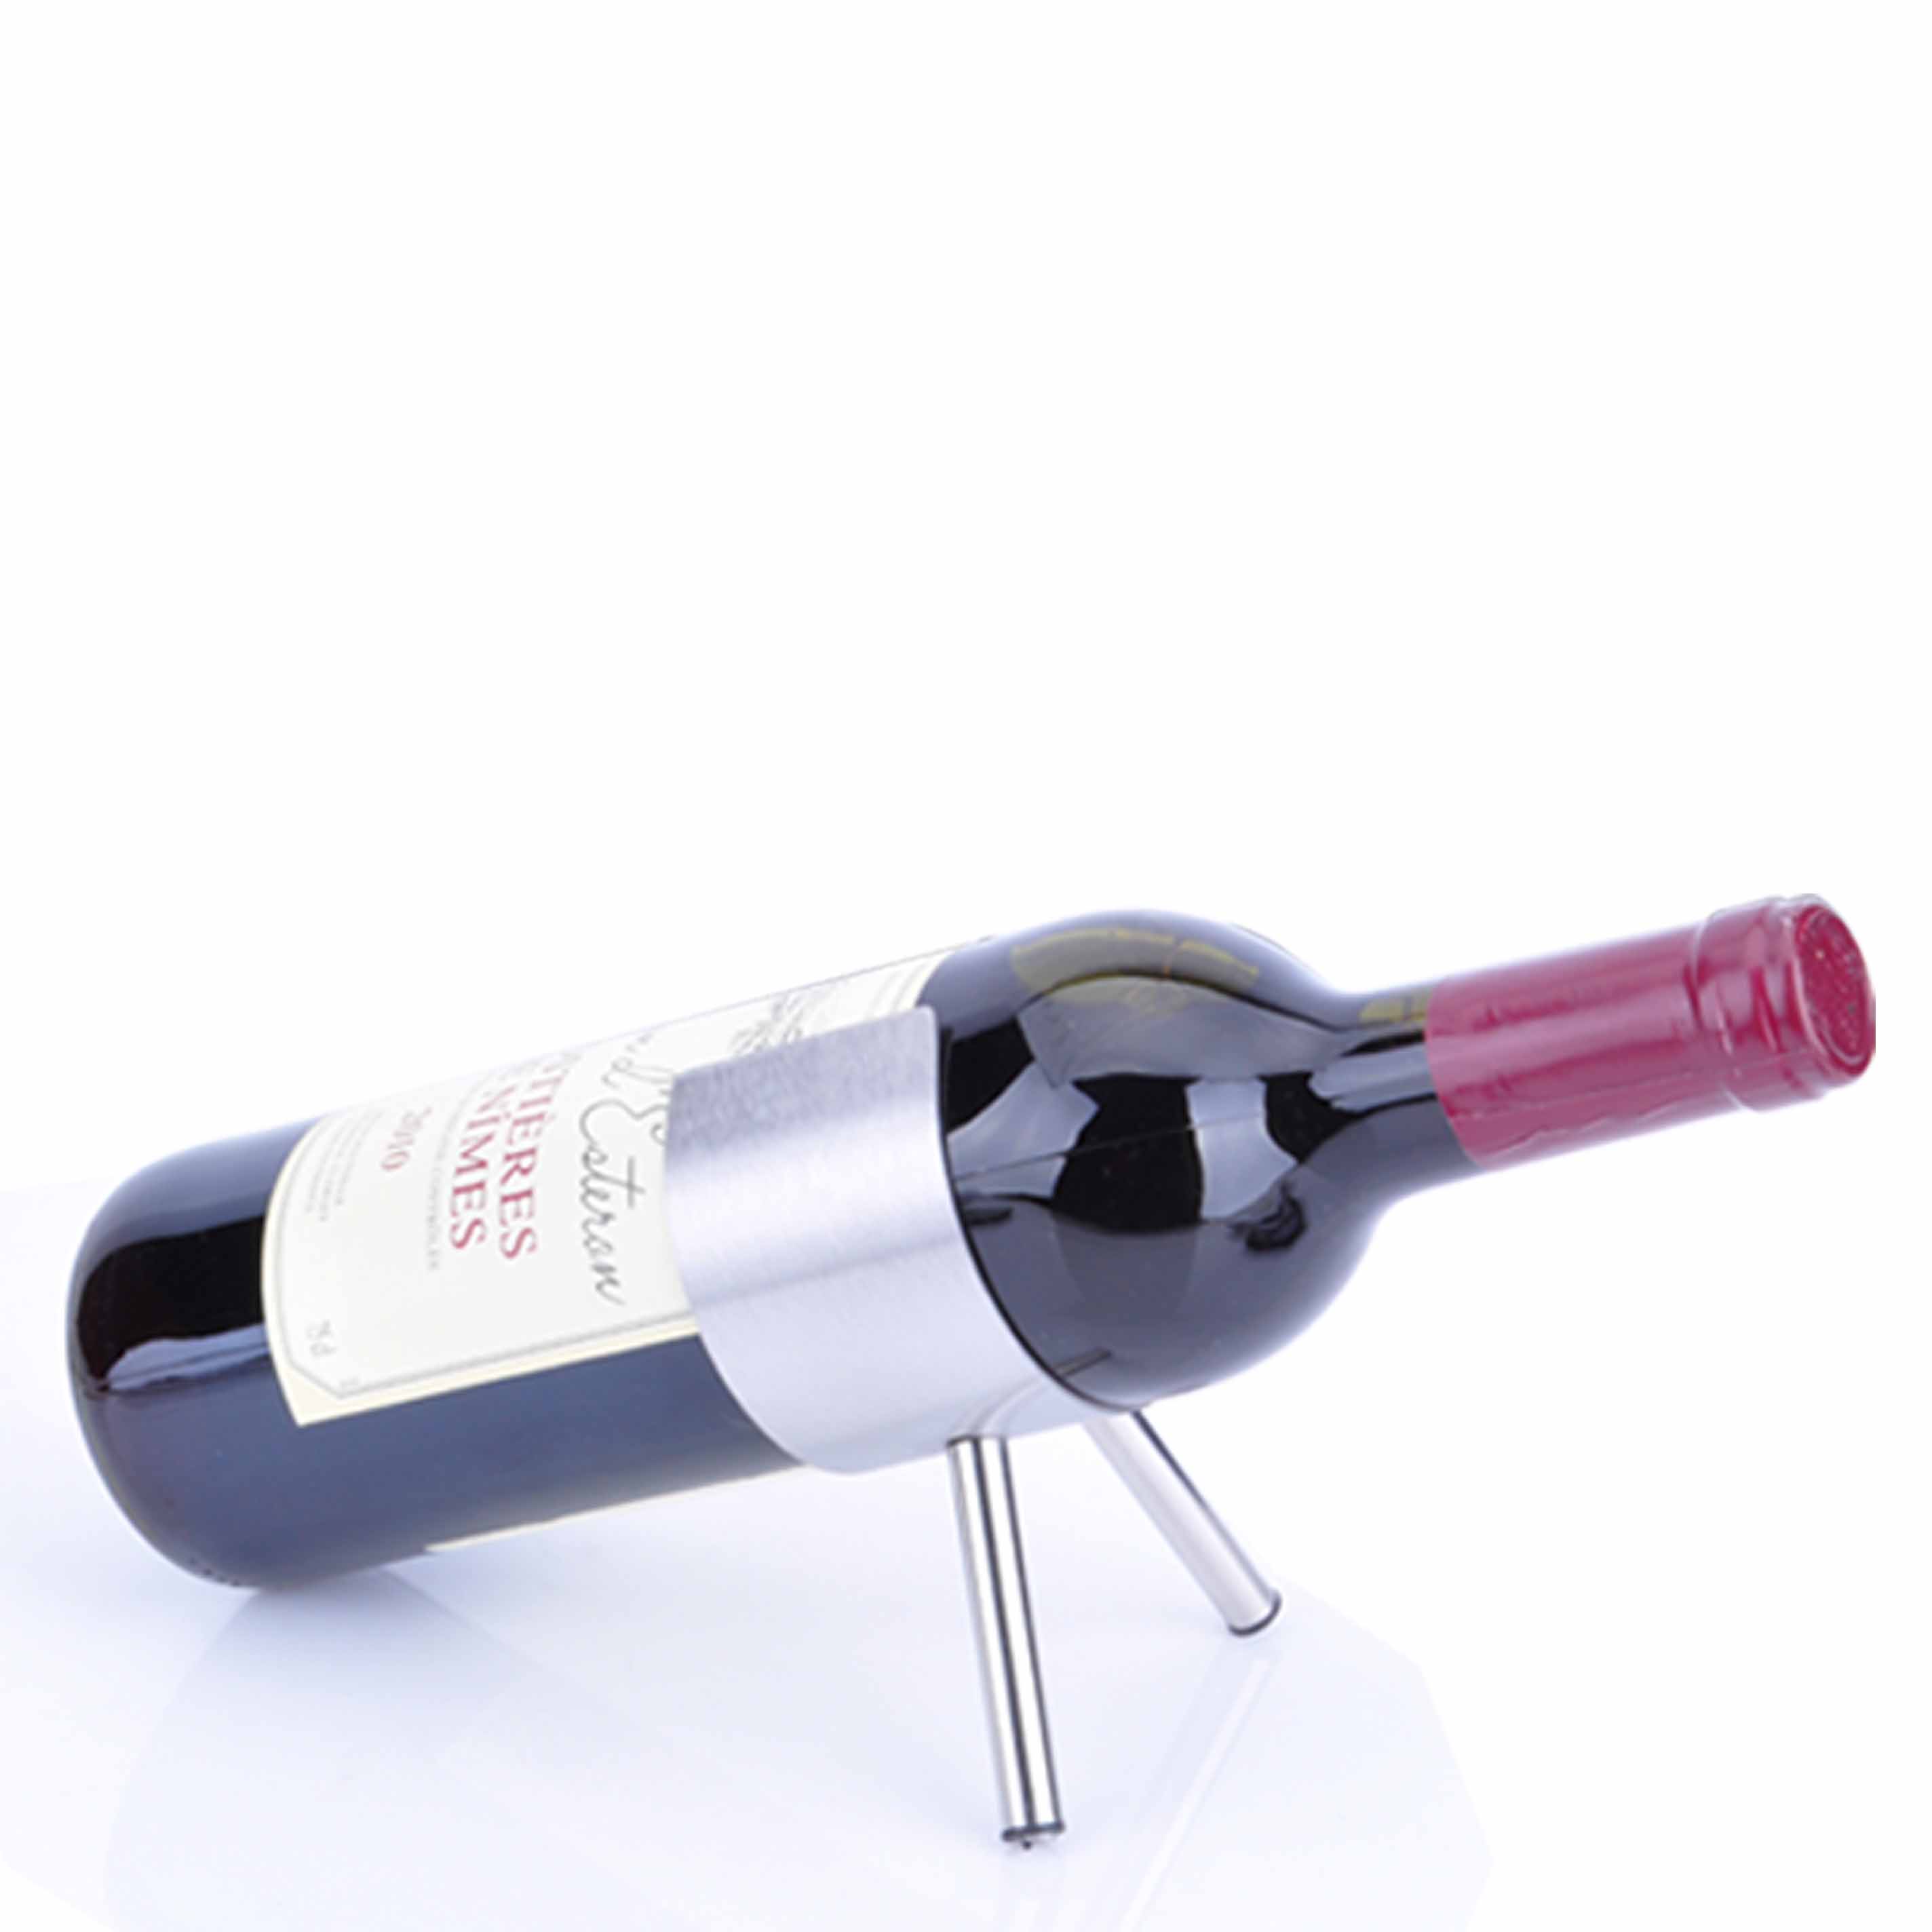 不銹鋼小鋼炮酒架創意酒架紅酒酒架歐式紅酒架葡萄酒架酒具